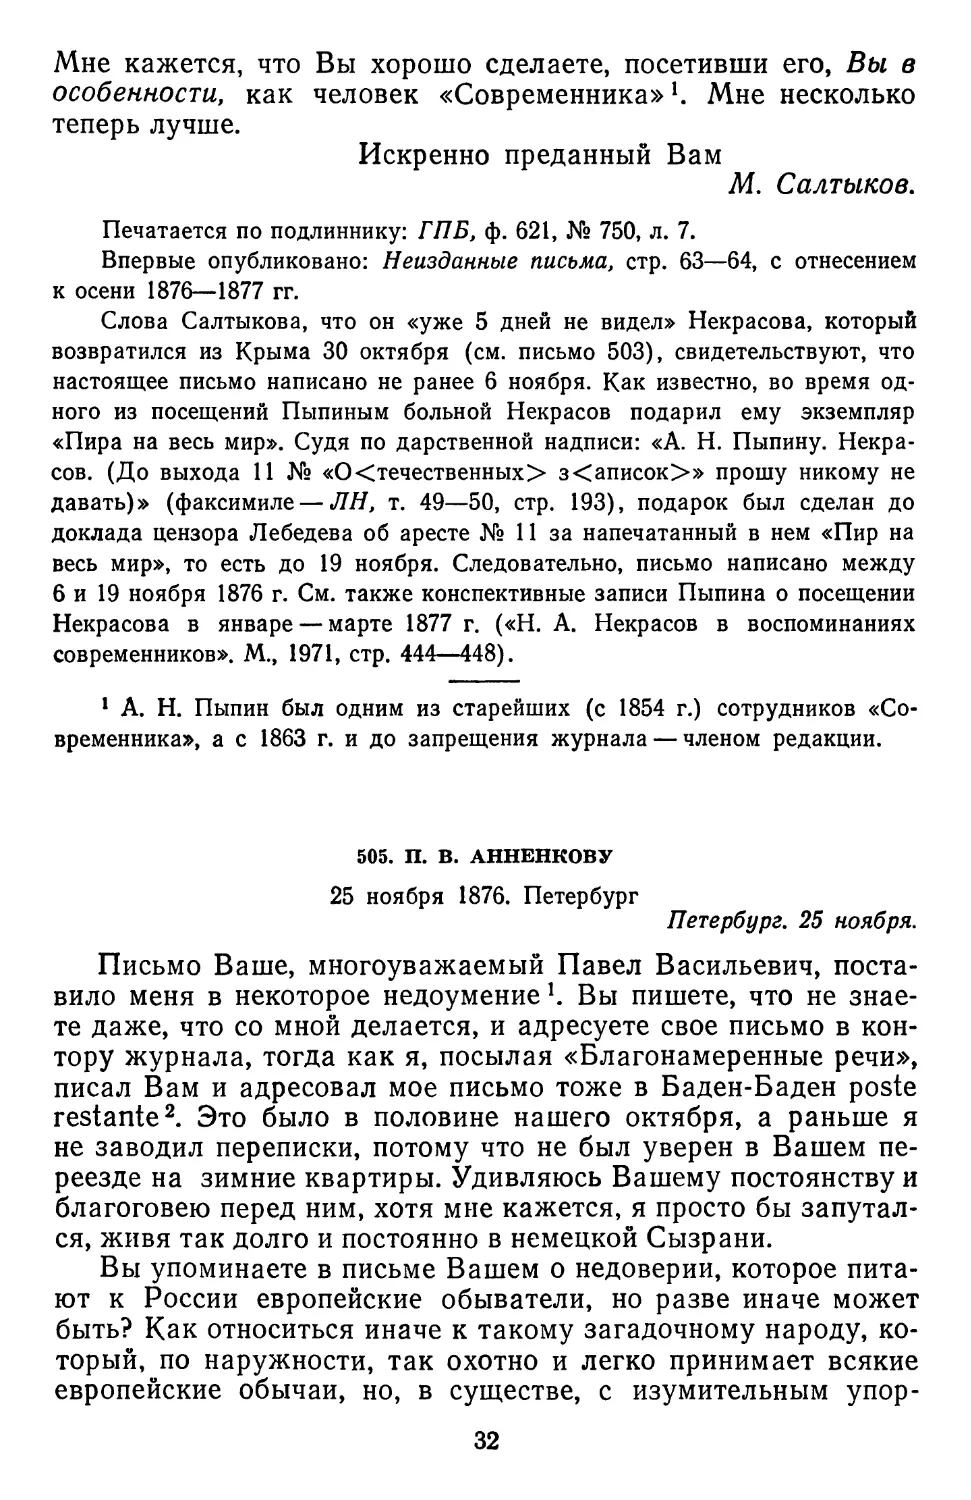 505.П. В. Анненкову. 25 ноября 1876. Петербург